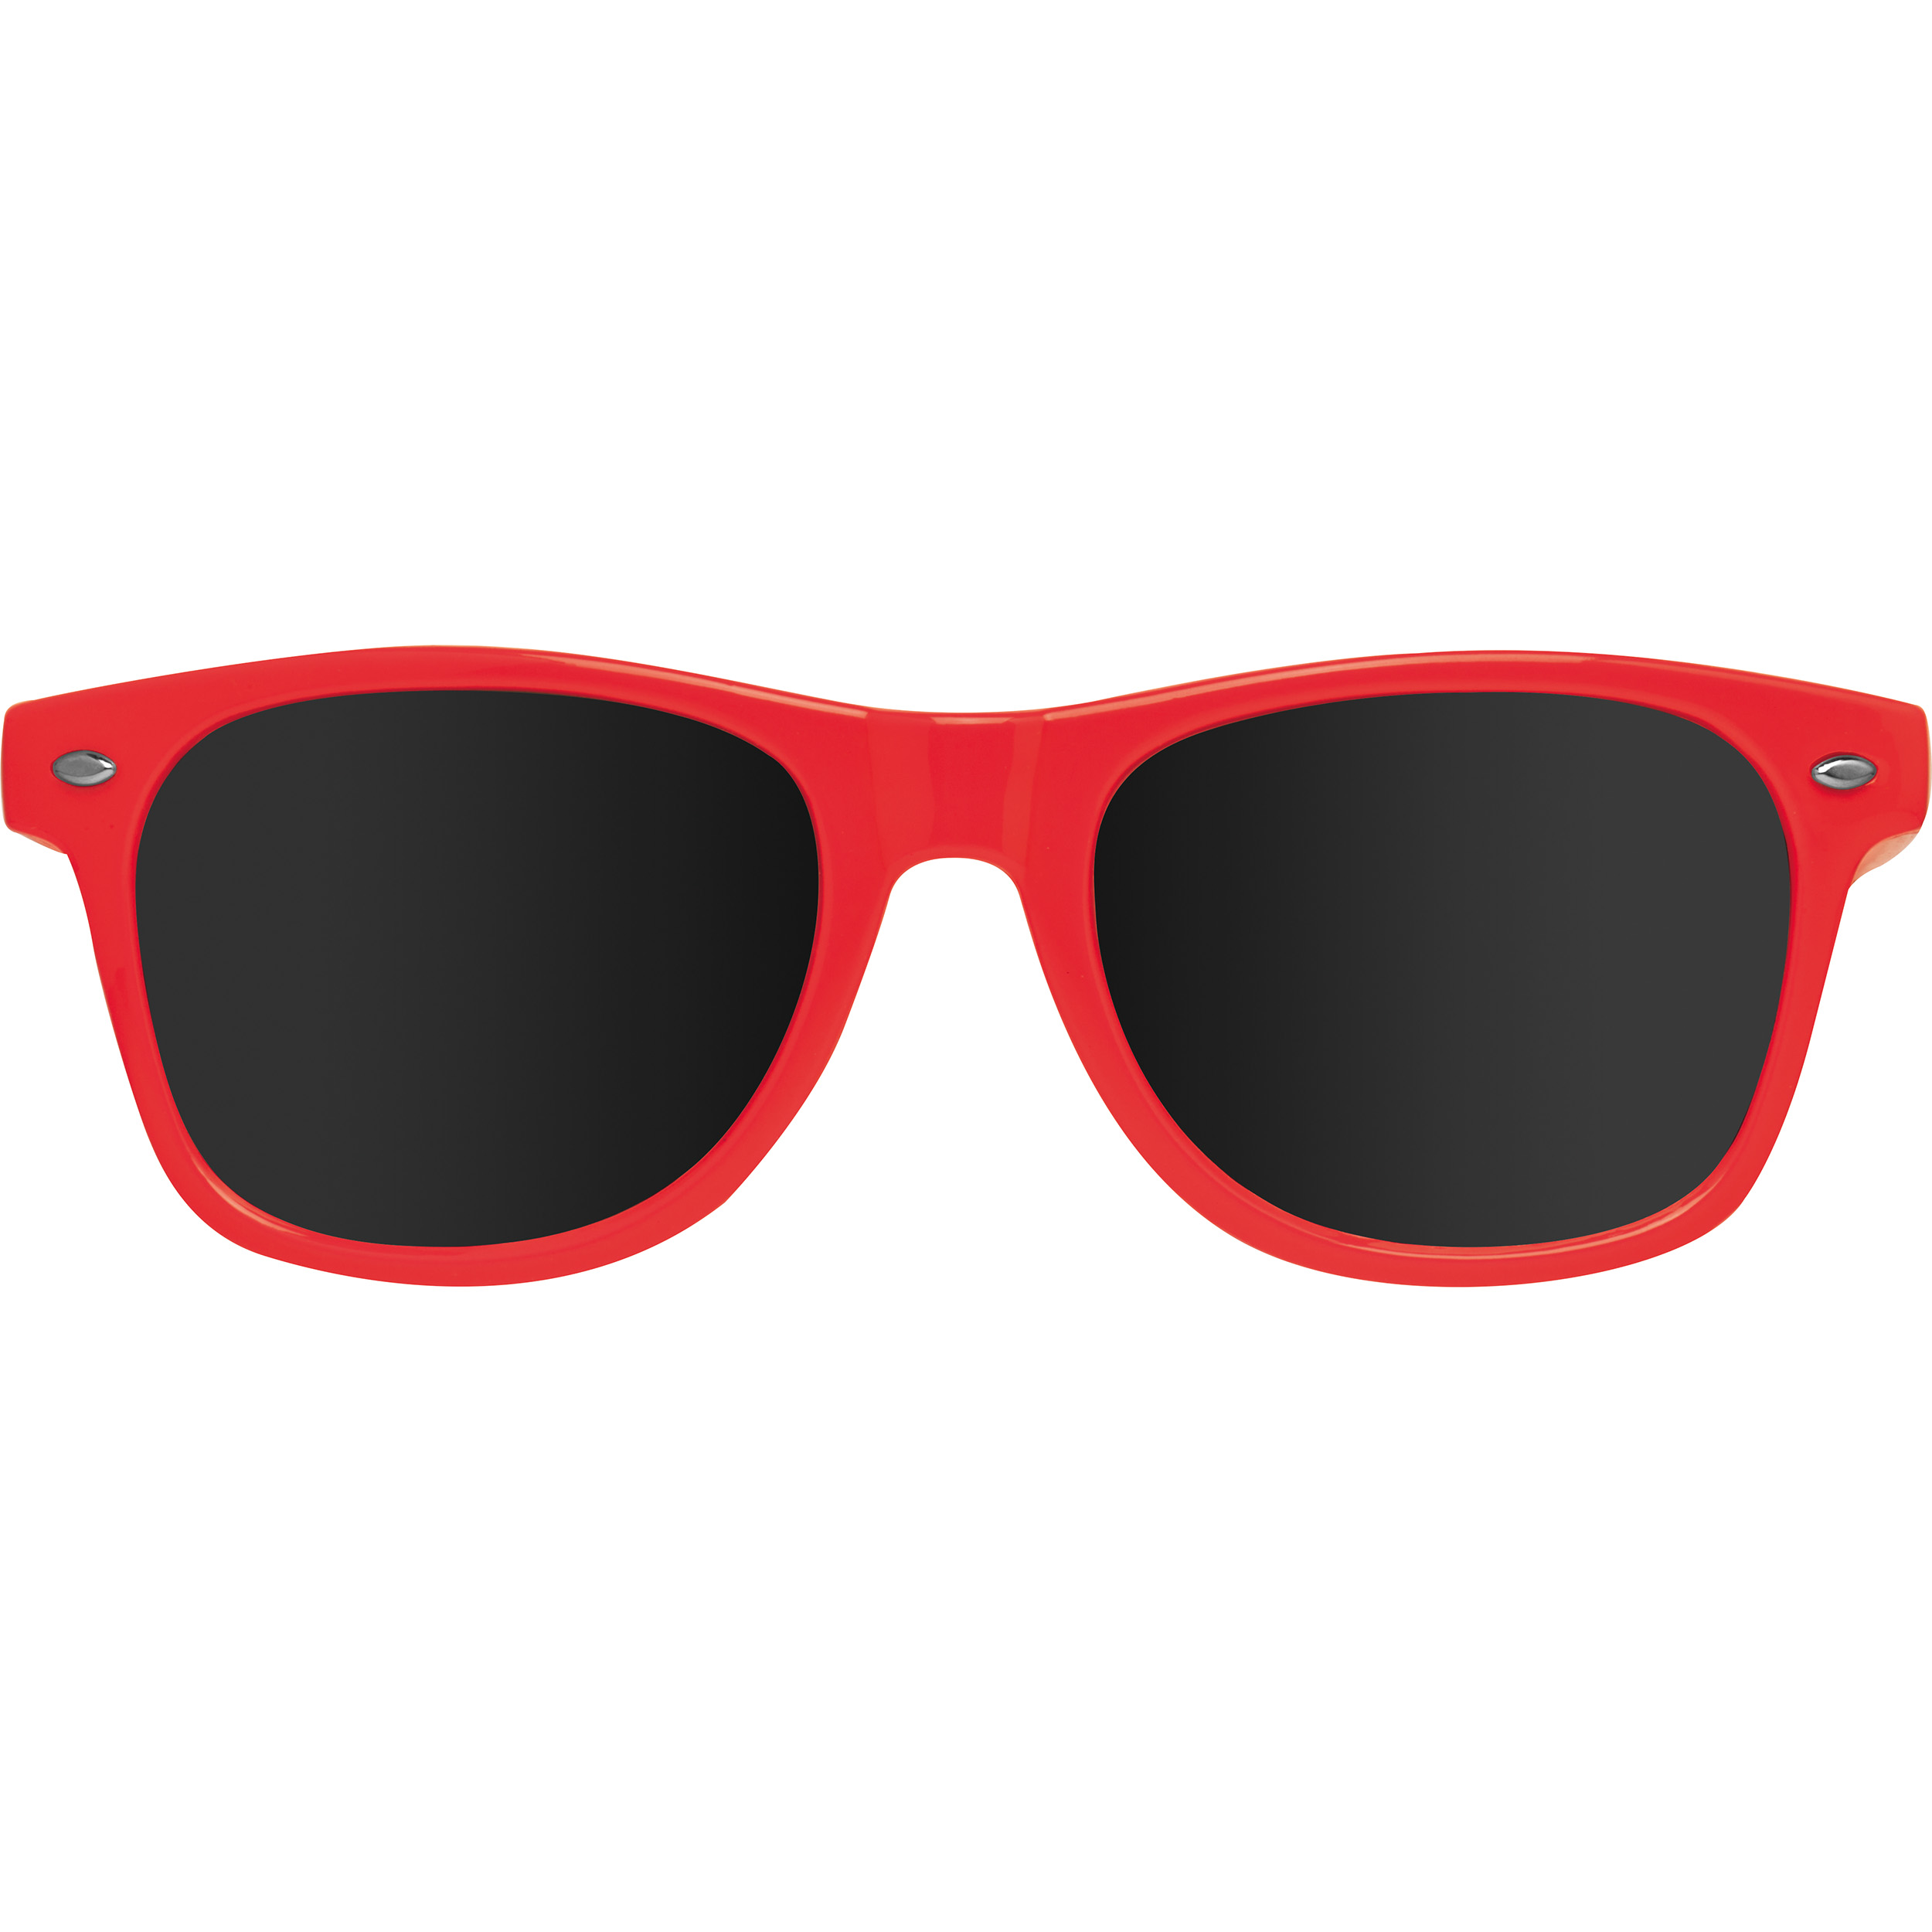 Sonnenbrille aus Kunststoff im "Nerdlook", UV 400 Schutz